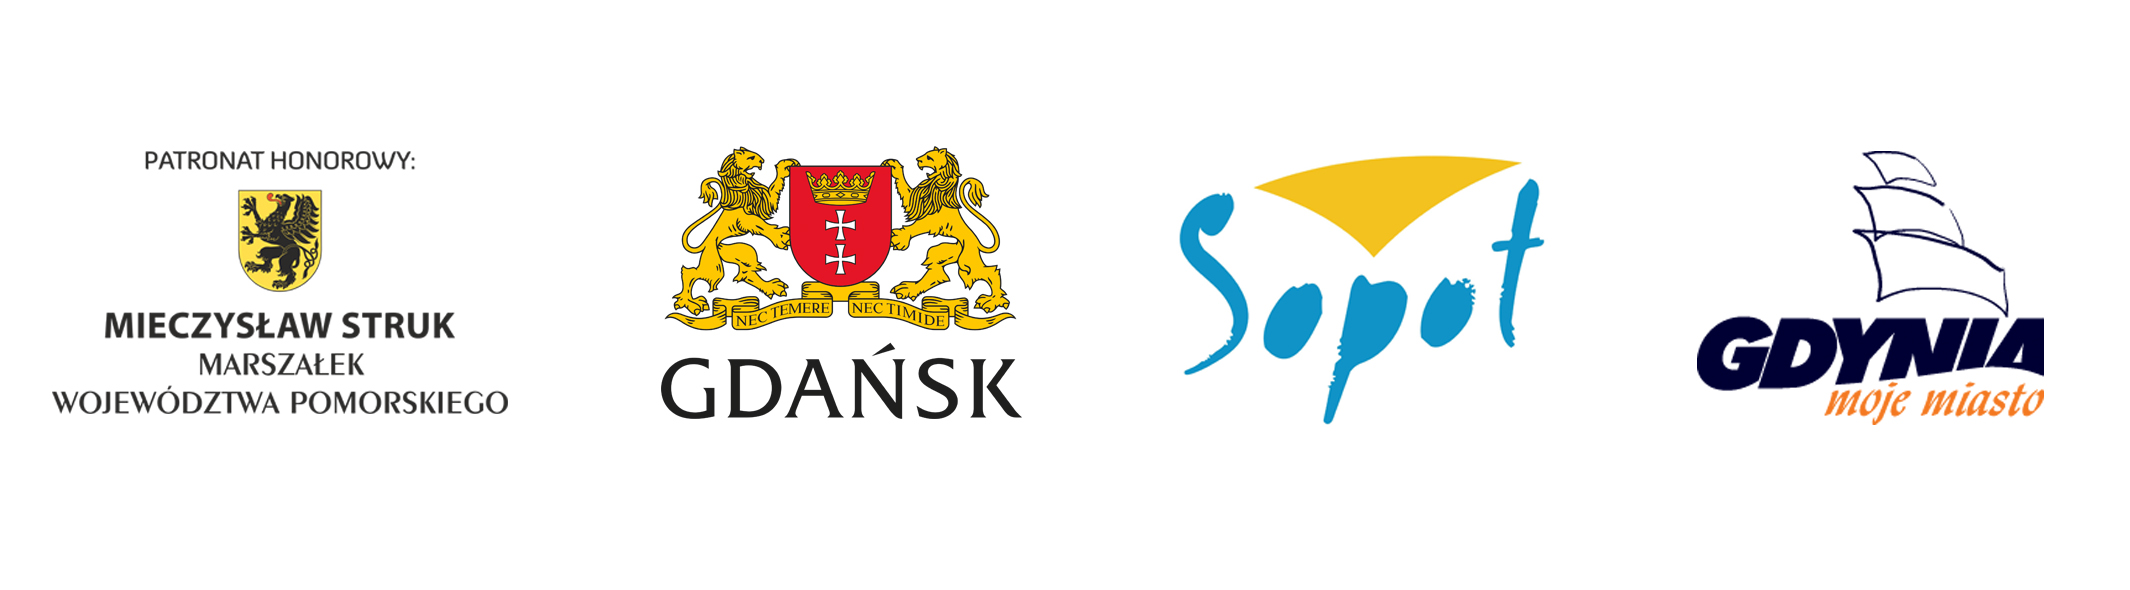 Logotypy Marszałka Województwa Pomorskiego, Miasta Gdańsk, Gdynia i Sopot